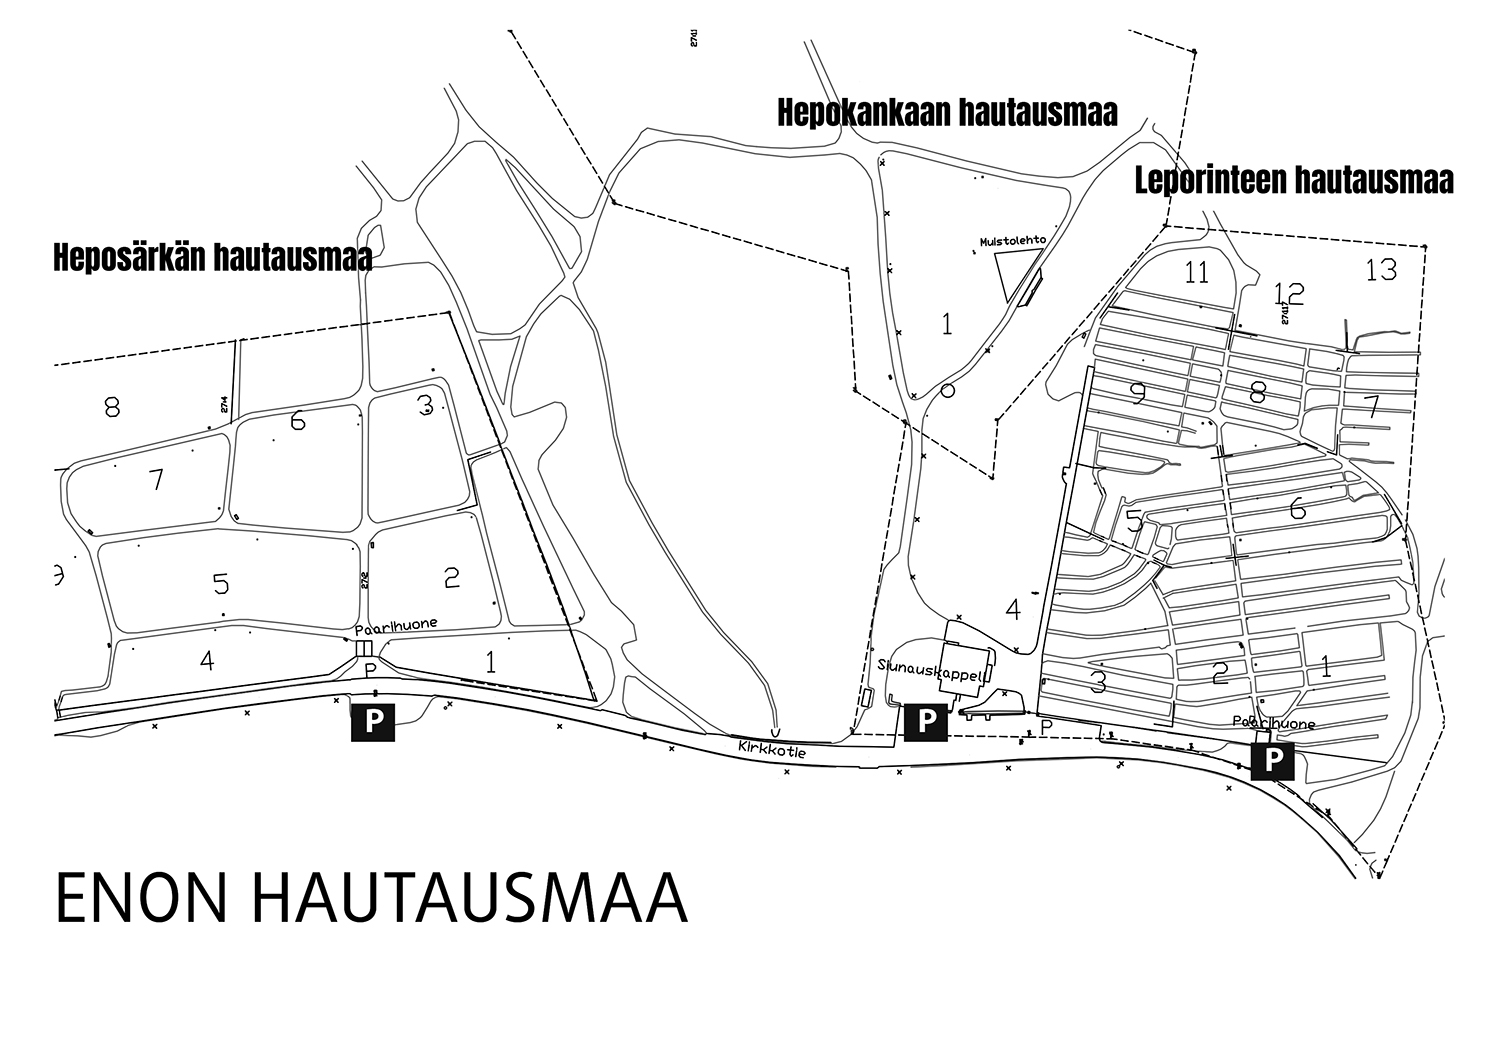 Enon hautausmaan alueiden karttakuva, kolme erillistä nimettyä osaa eli Heposärkän, Hepokankaan ja Leponiemen hautausmaat.